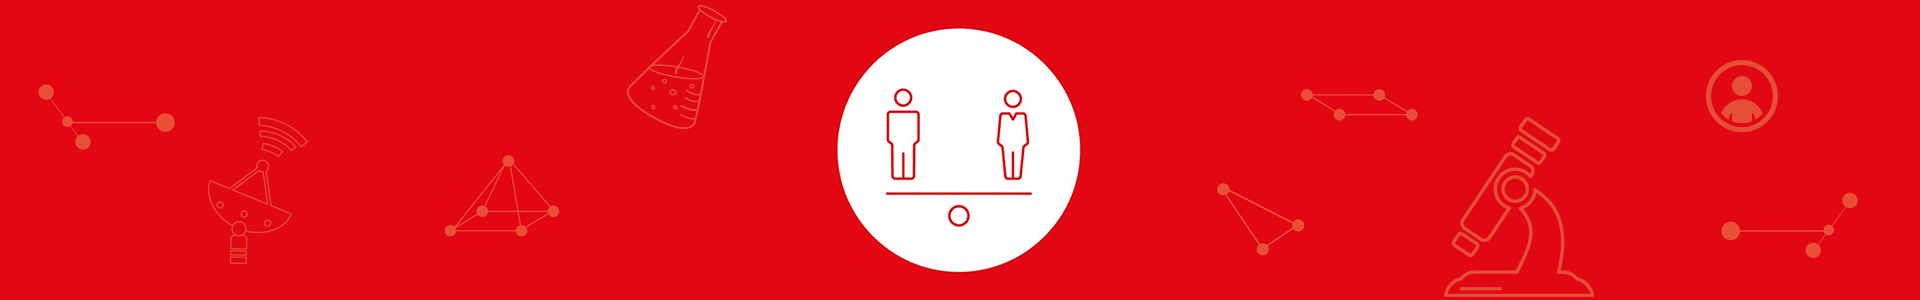 illustrasjon av mann og kvinne som står på en vekt